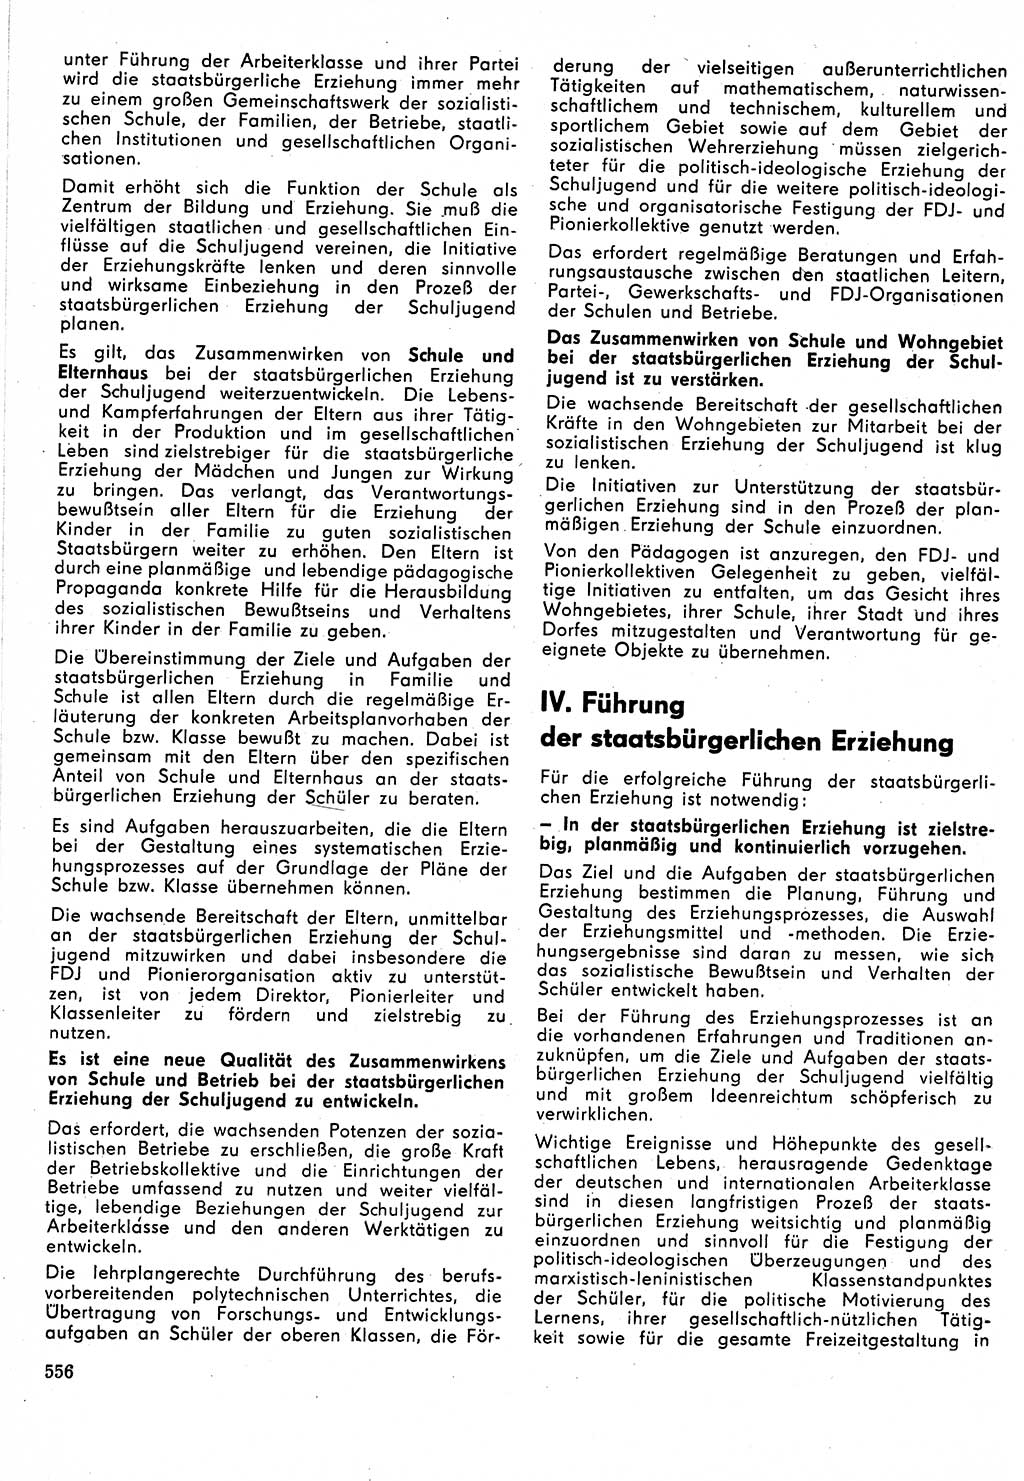 Neuer Weg (NW), Organ des Zentralkomitees (ZK) der SED (Sozialistische Einheitspartei Deutschlands) für Fragen des Parteilebens, 24. Jahrgang [Deutsche Demokratische Republik (DDR)] 1969, Seite 556 (NW ZK SED DDR 1969, S. 556)